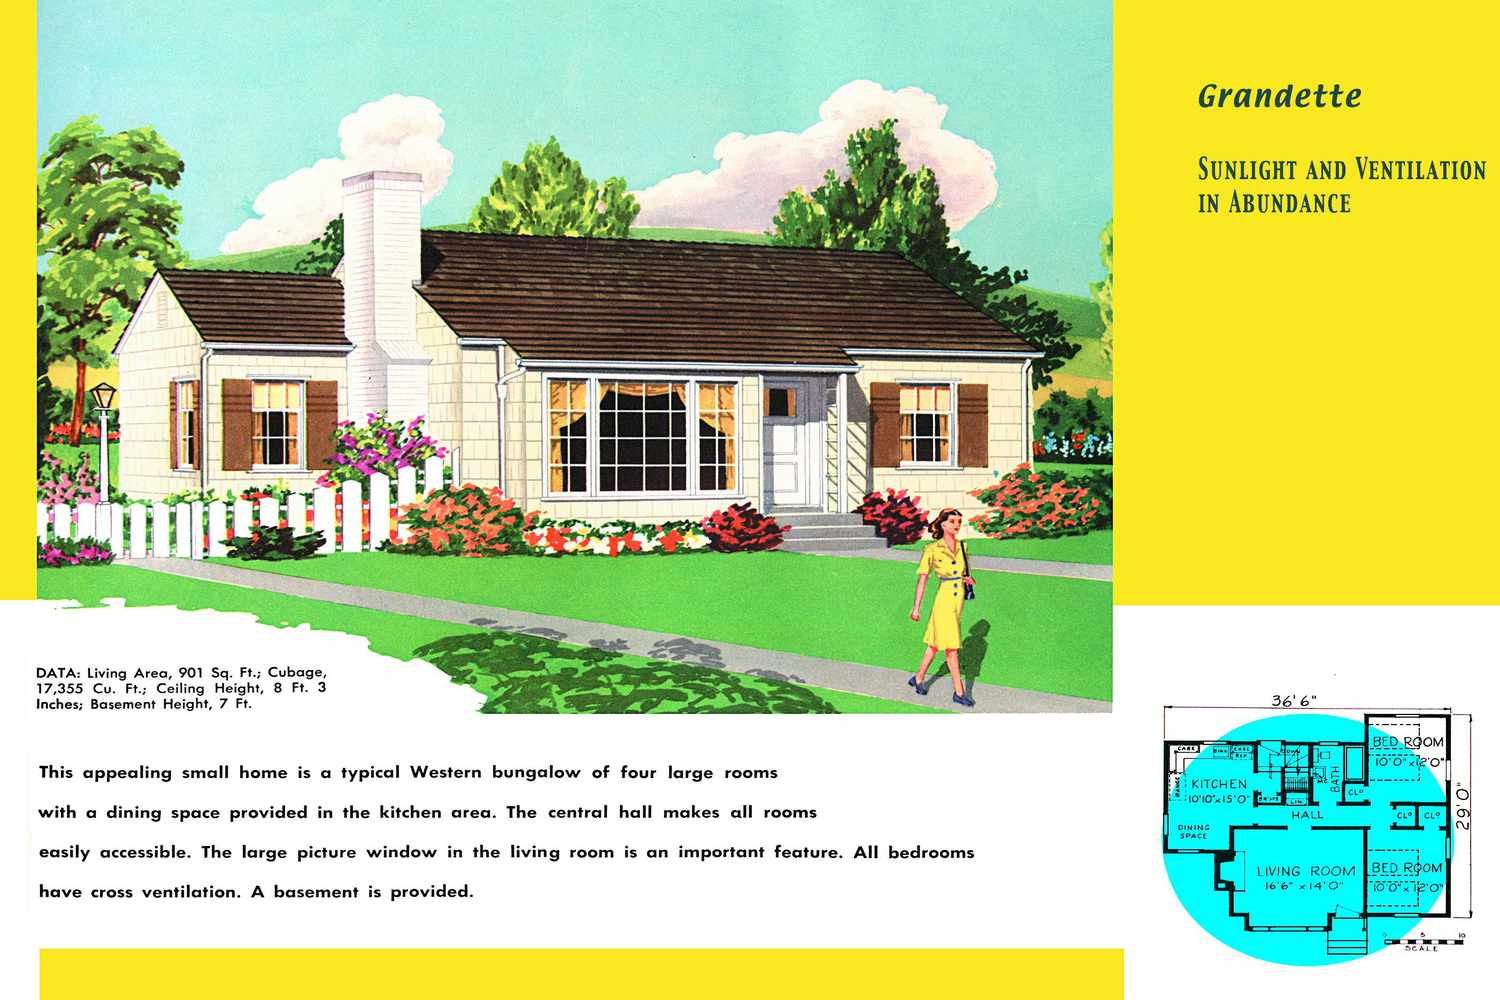 Grundriss und Rendering eines Hauses im Ranch-Stil, das als Western-Bungalow beschrieben wird